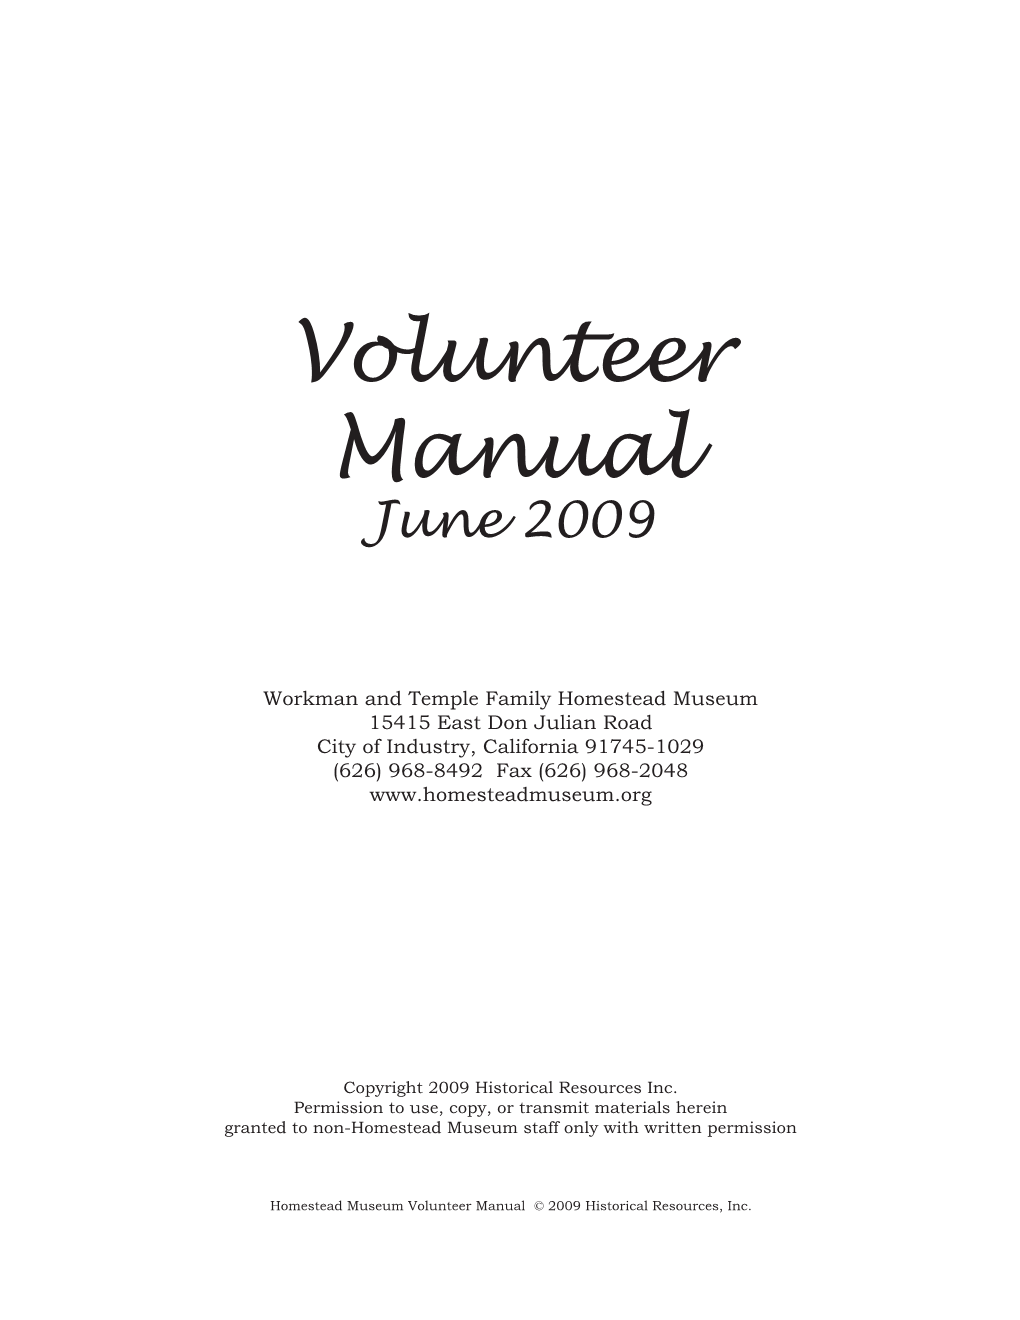 Volunteer Manual June 2009